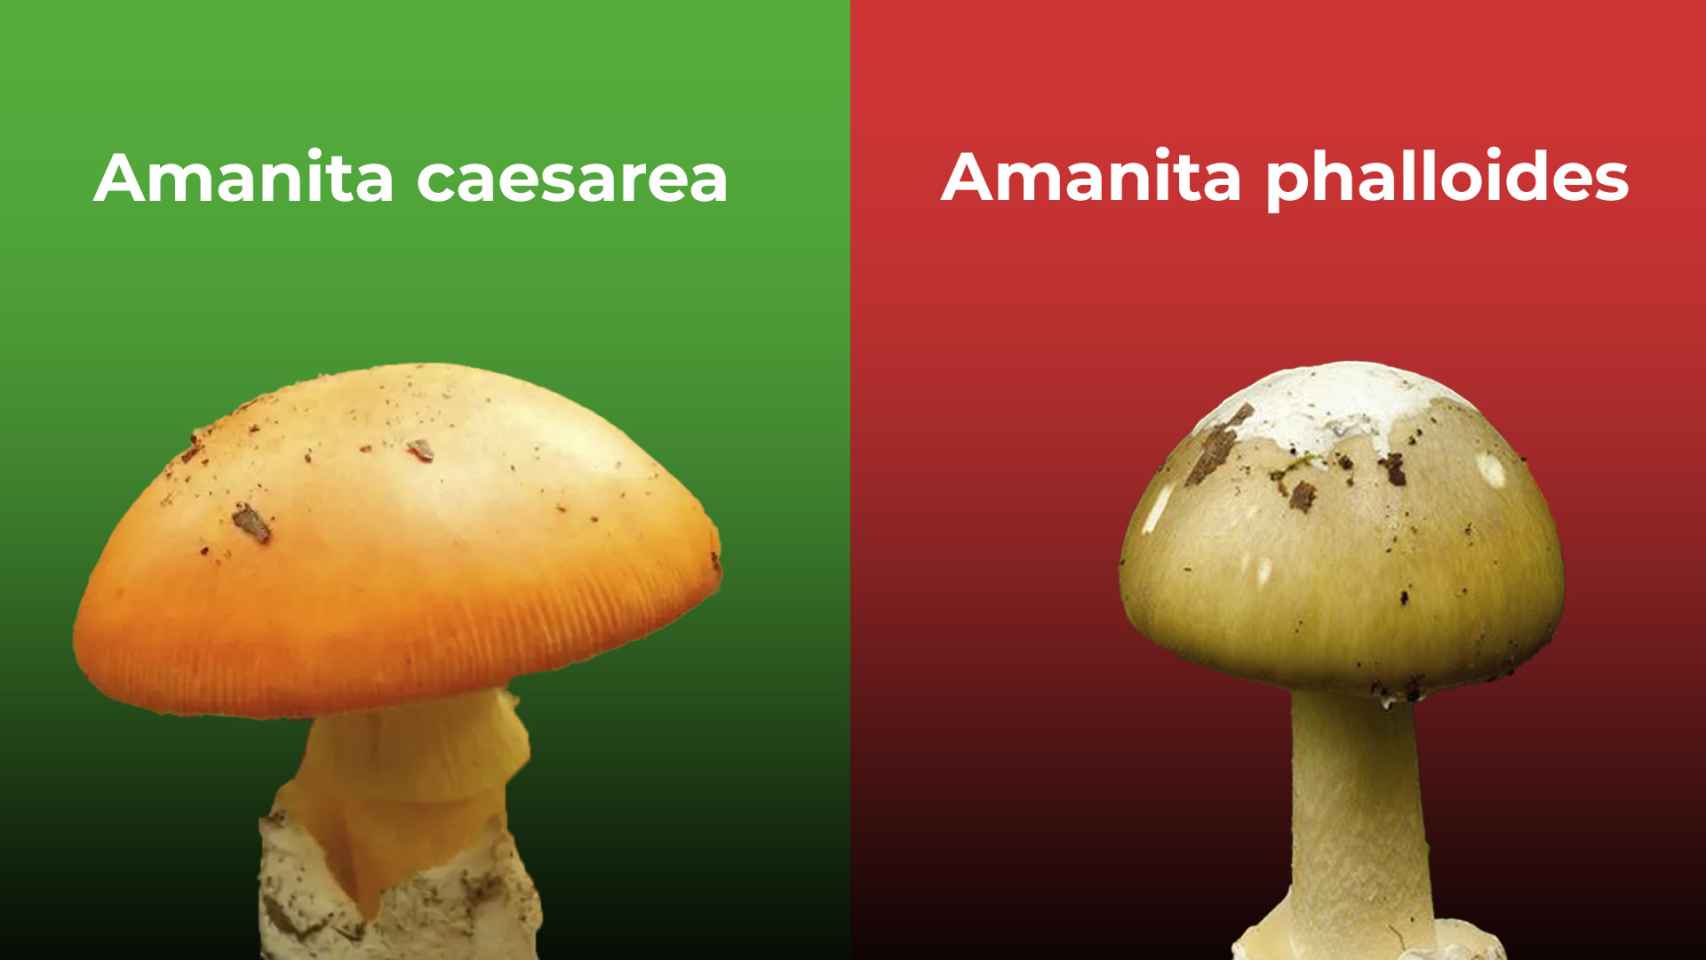 A la izquierda una 'amanita caesarea', un hongo comestible; a la derecha una 'amanita phalloides', potencialmente mortal